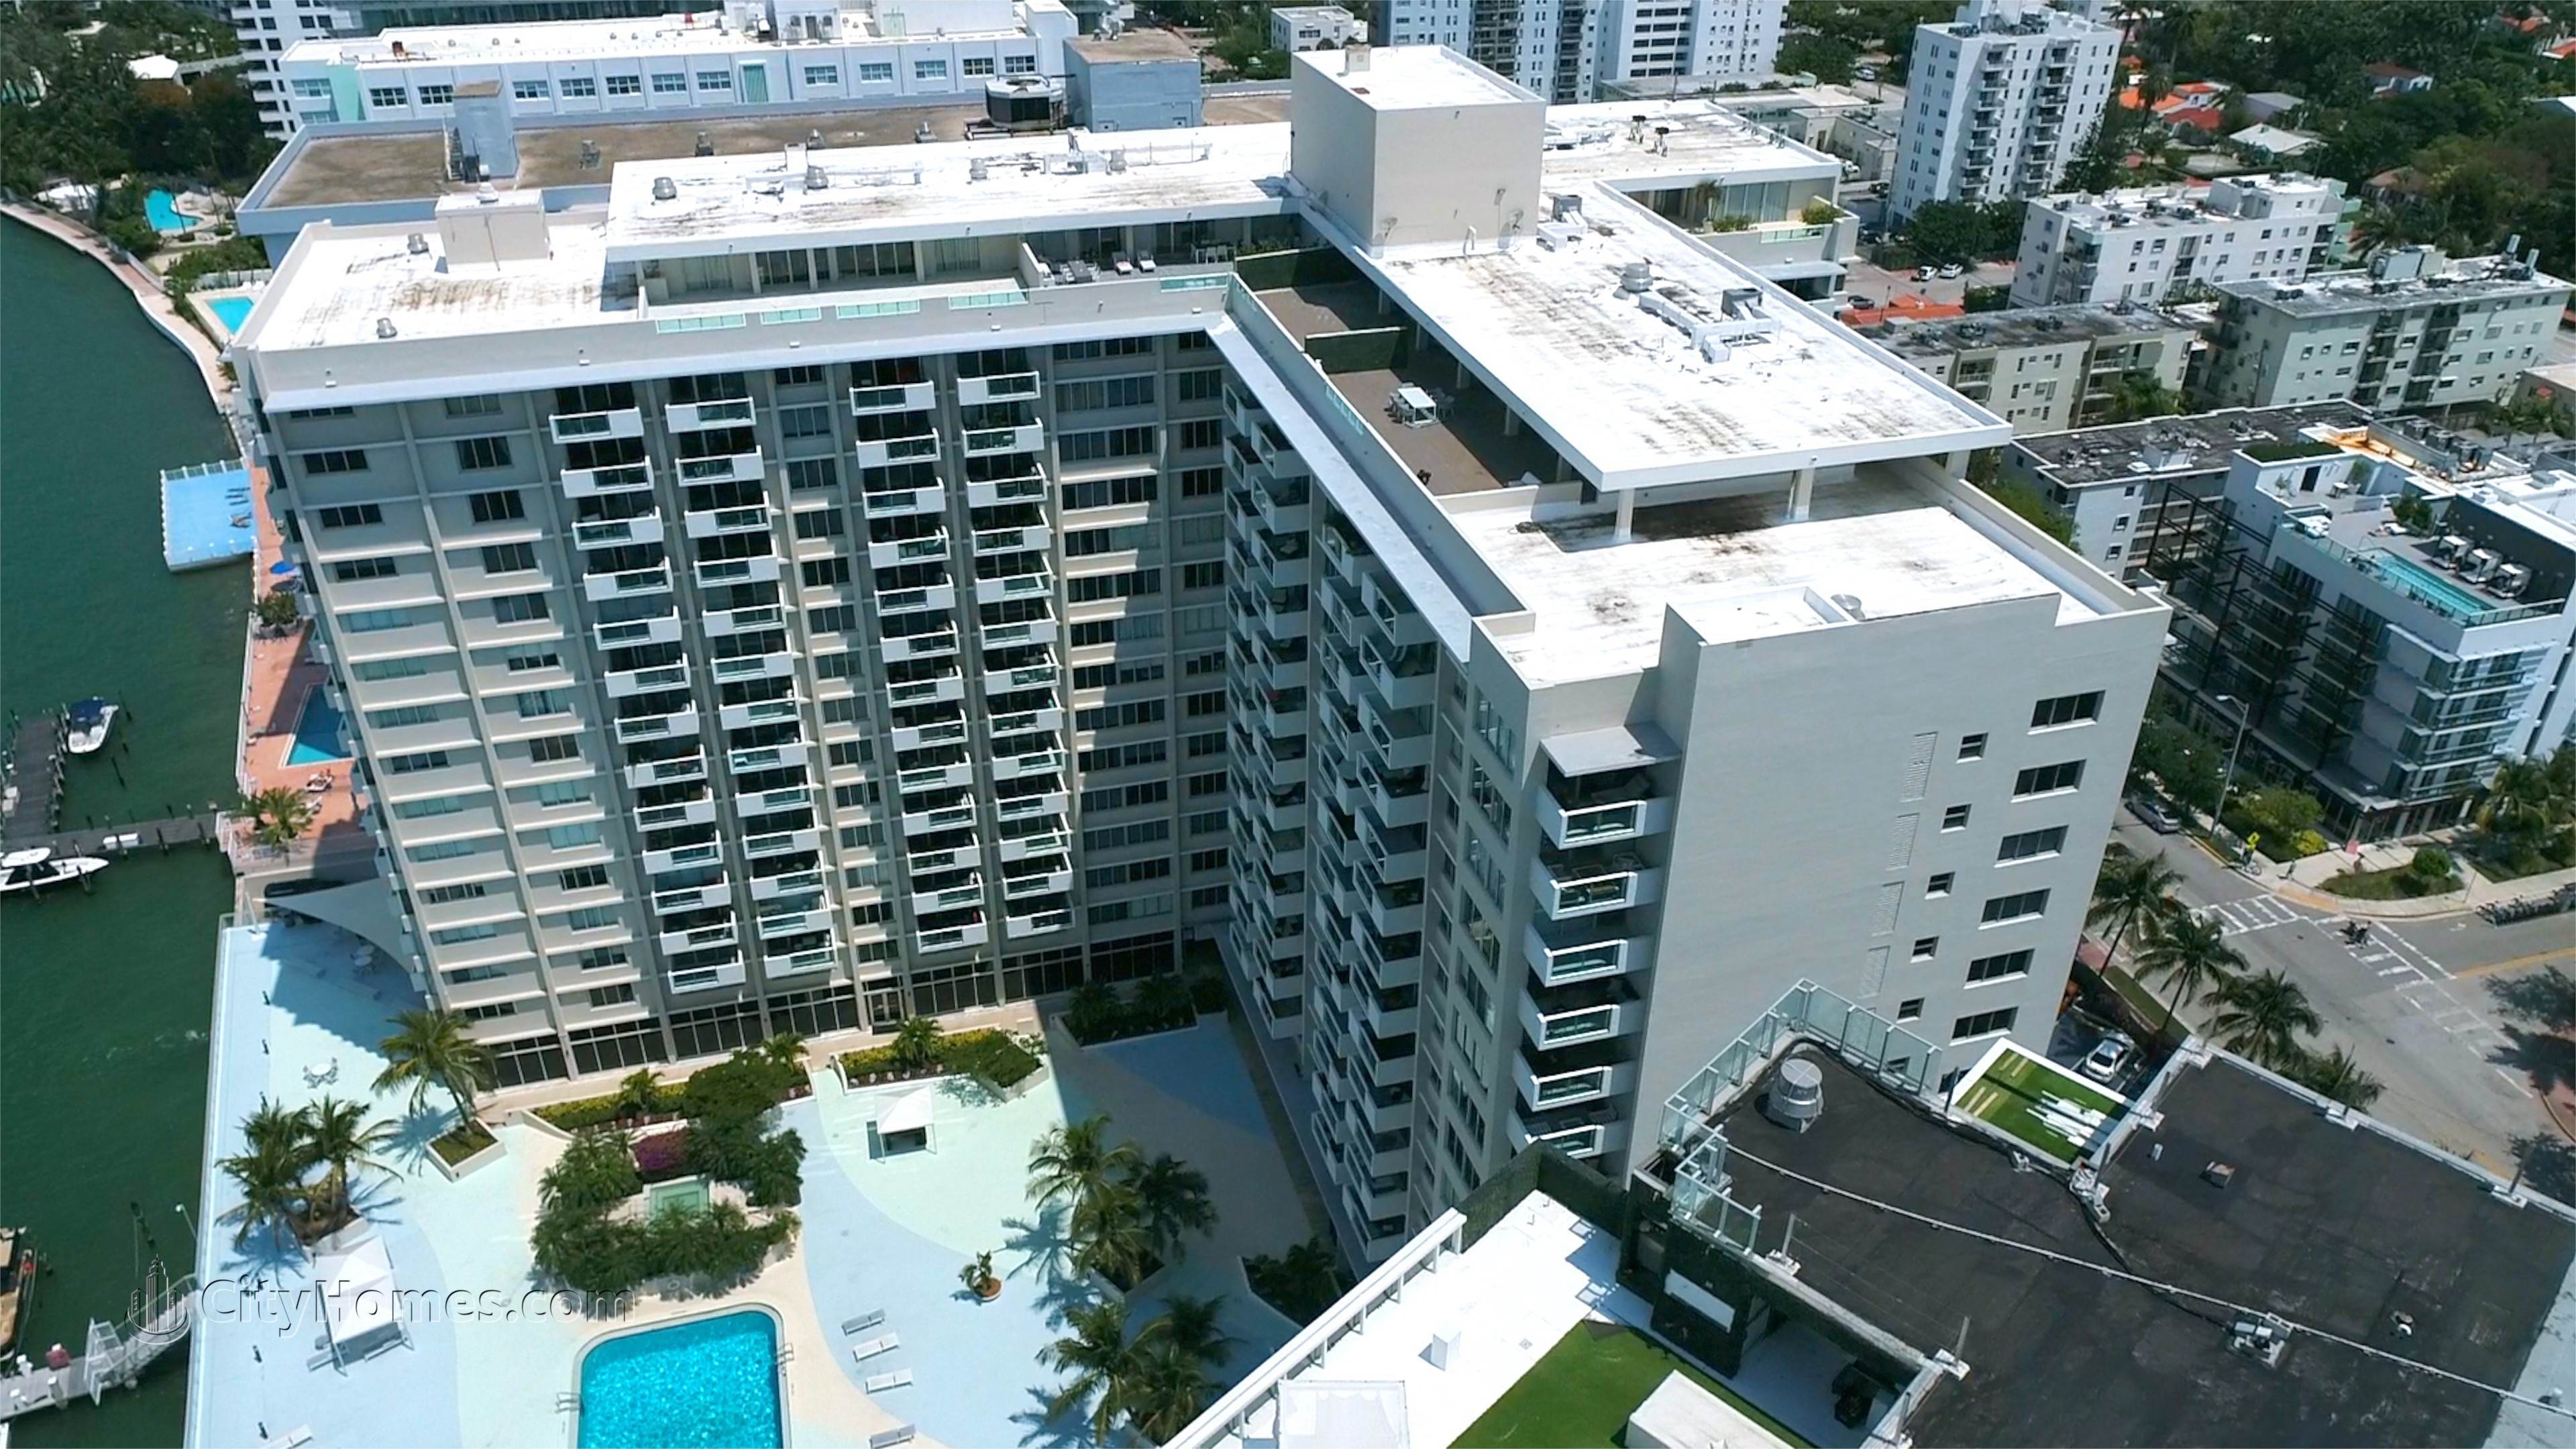 4. MIRADOR NORTH building at 1200 West Avenue, West Avenue, Miami Beach, FL 33139